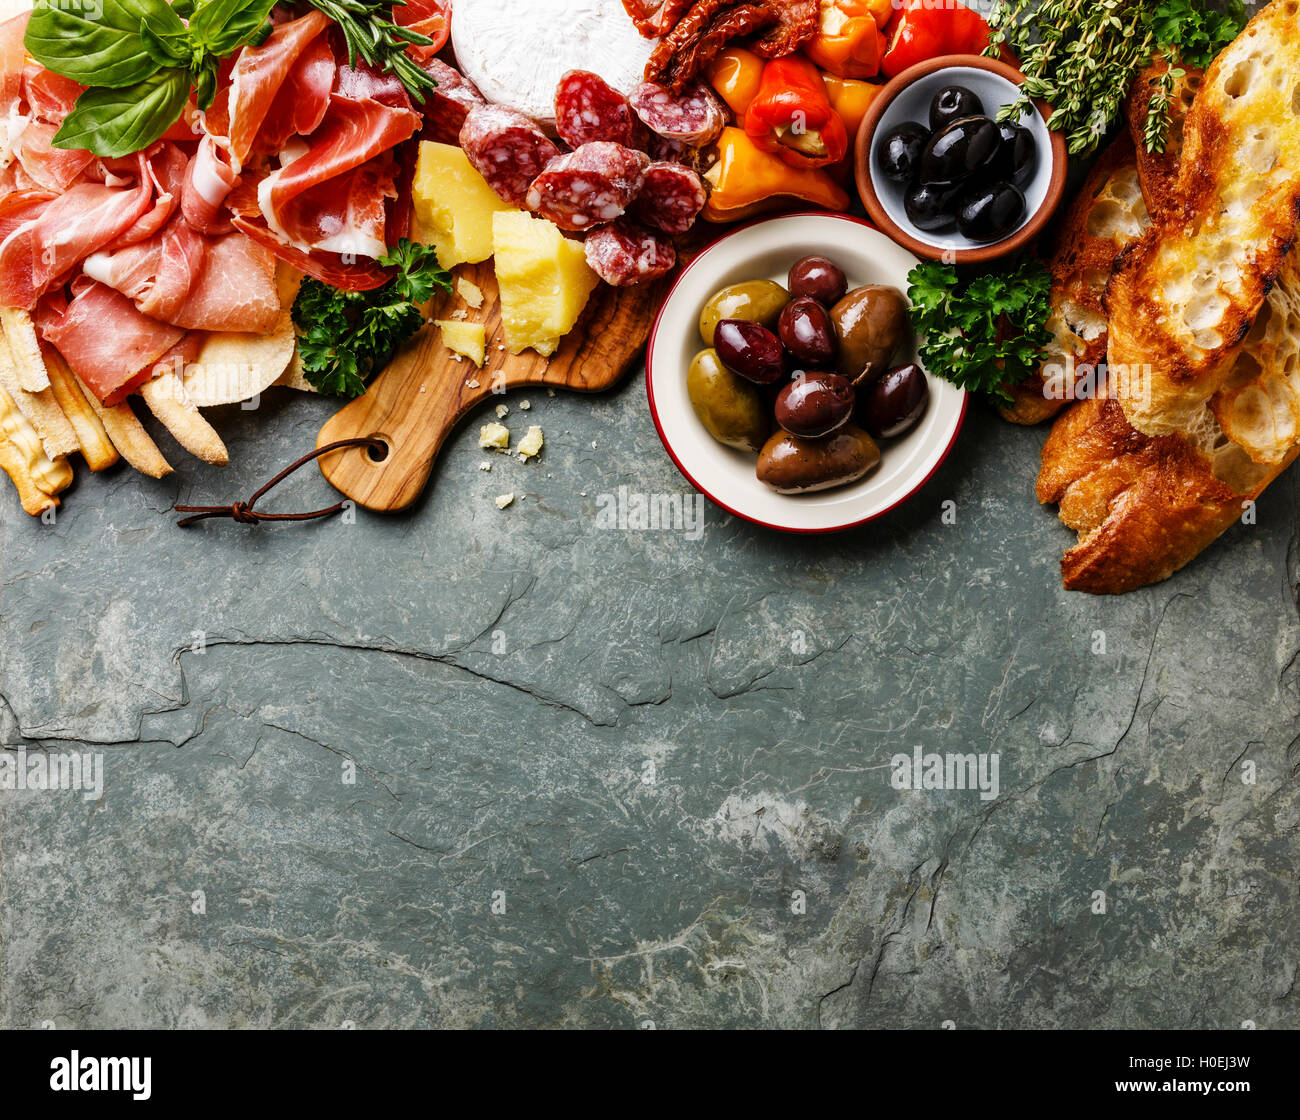 Ingrédients alimentaires italien de fond avec jambon, salami, parmesan, olives, bâtonnets de pain sur ardoise en pierre Banque D'Images